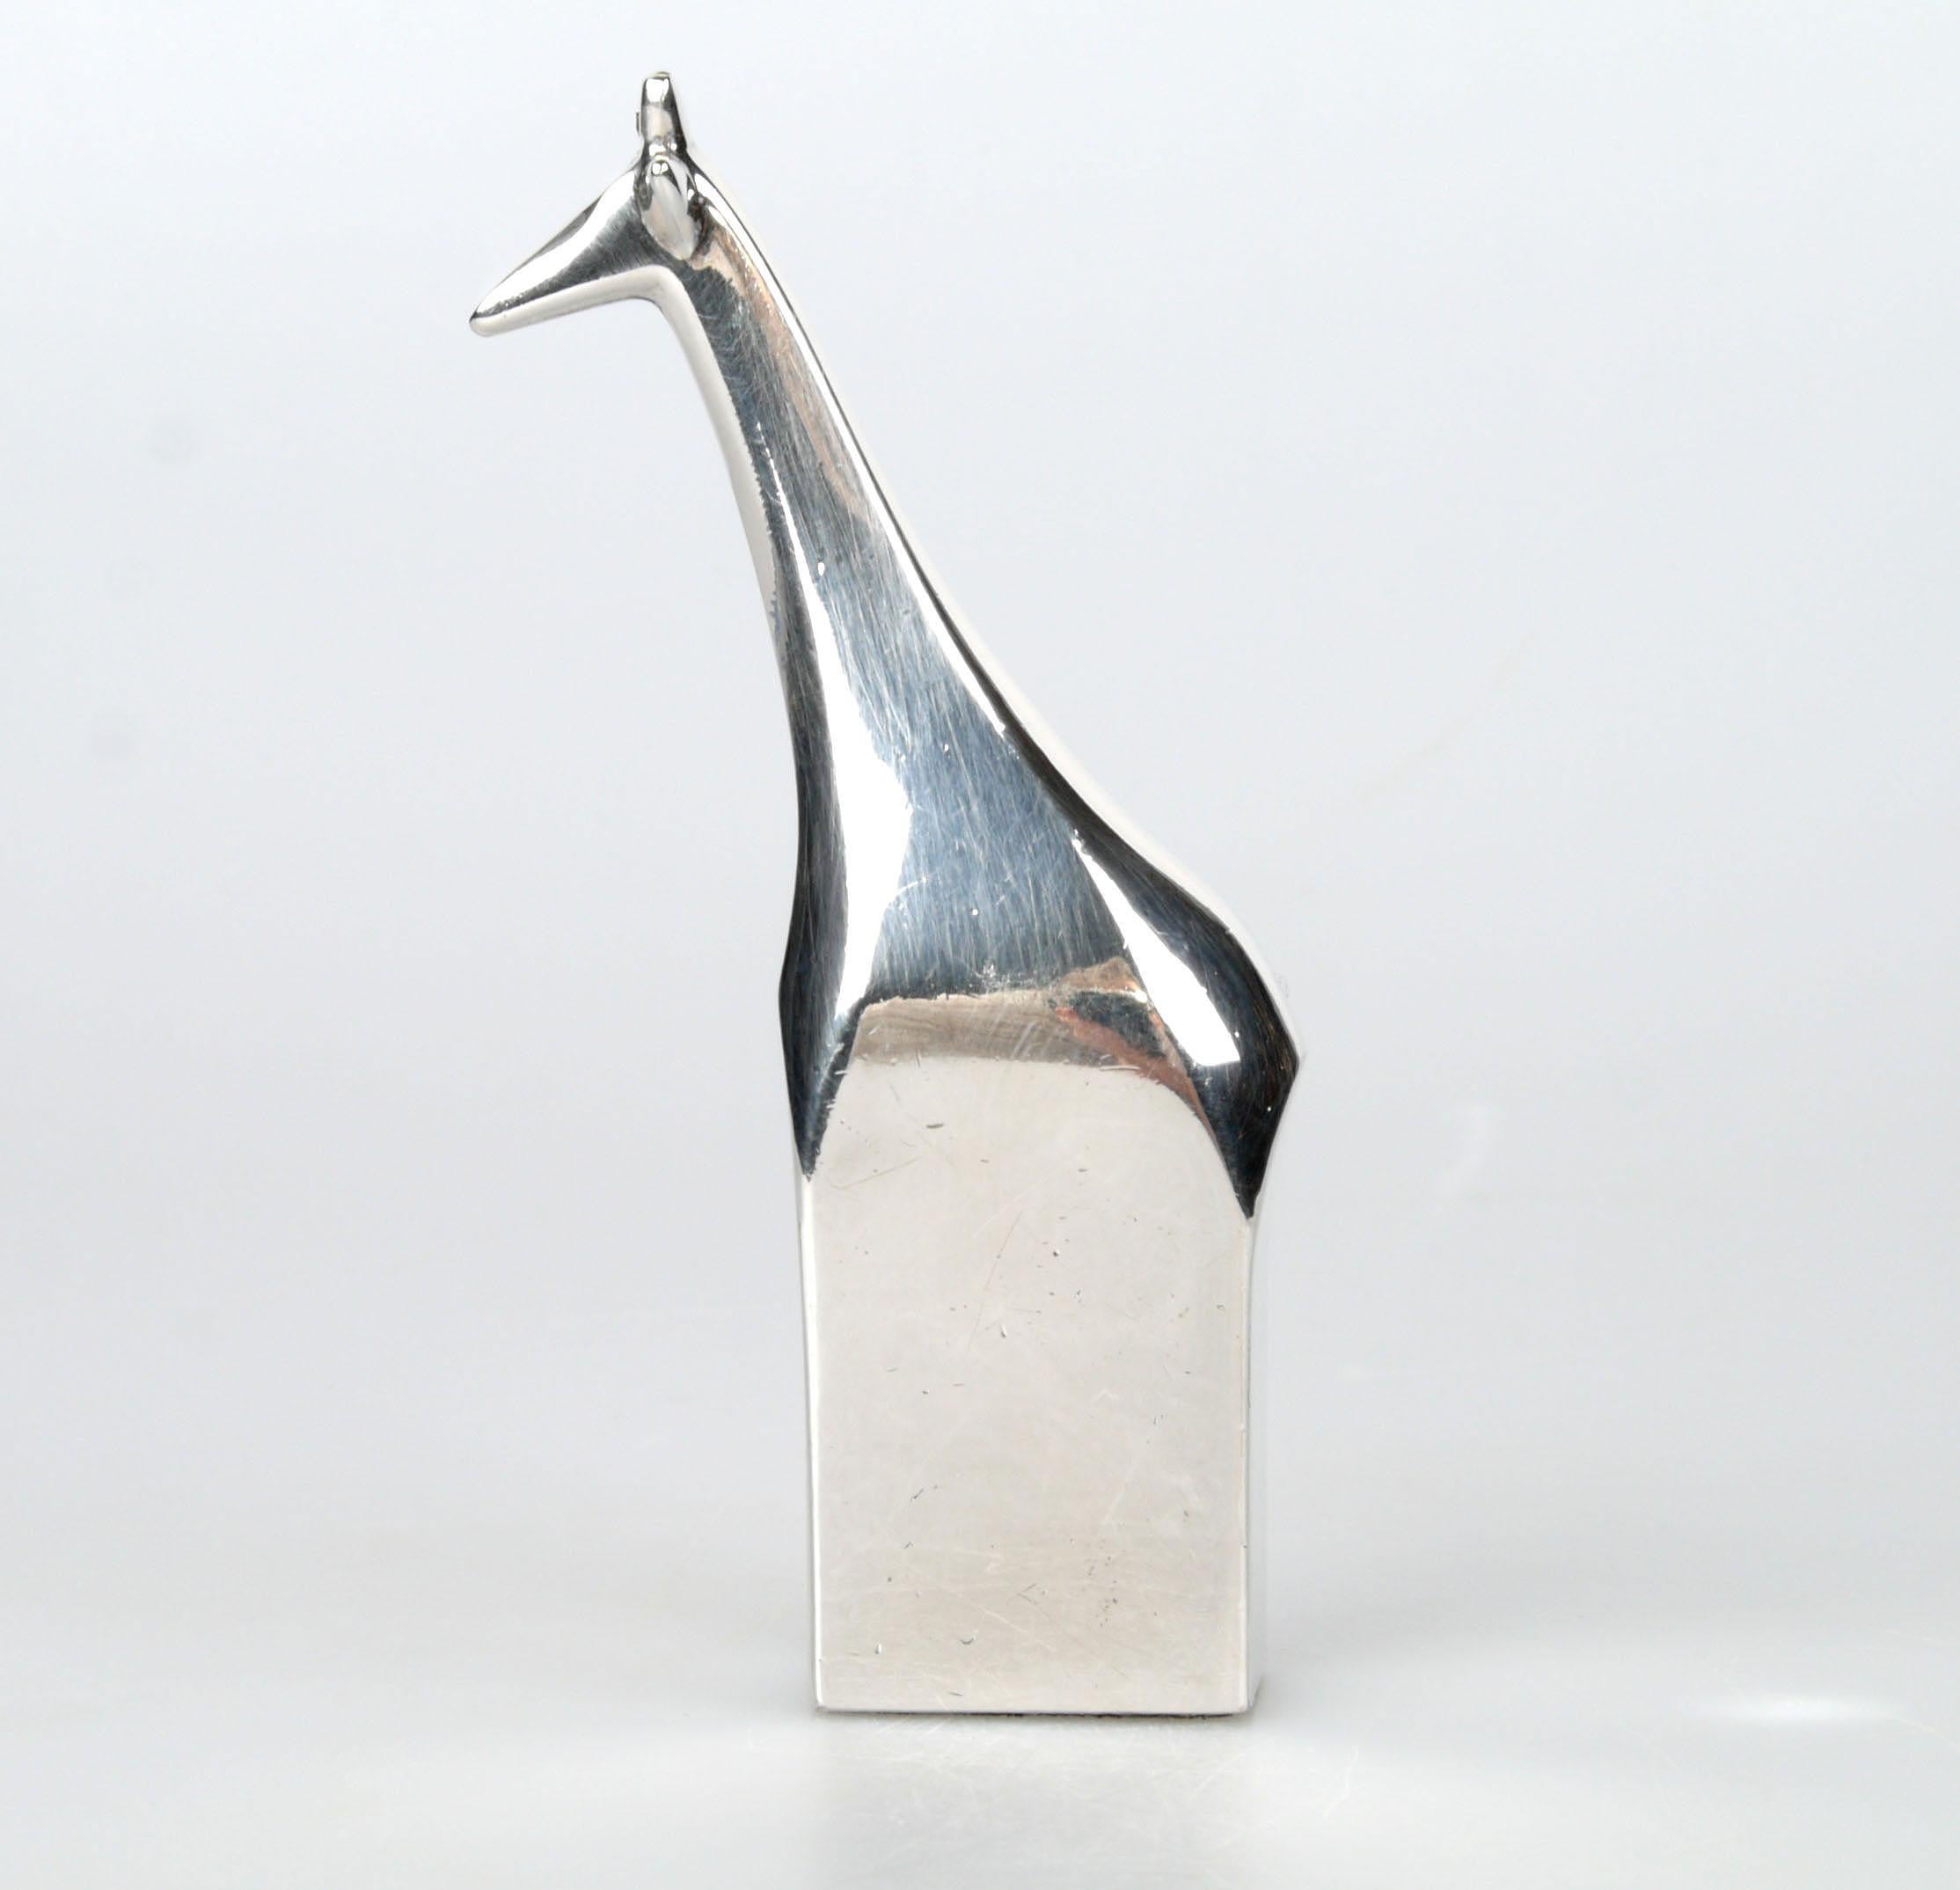 Danish Scandinavian Modern Original Dansk Design Silver Plate Giraffe Paperweight